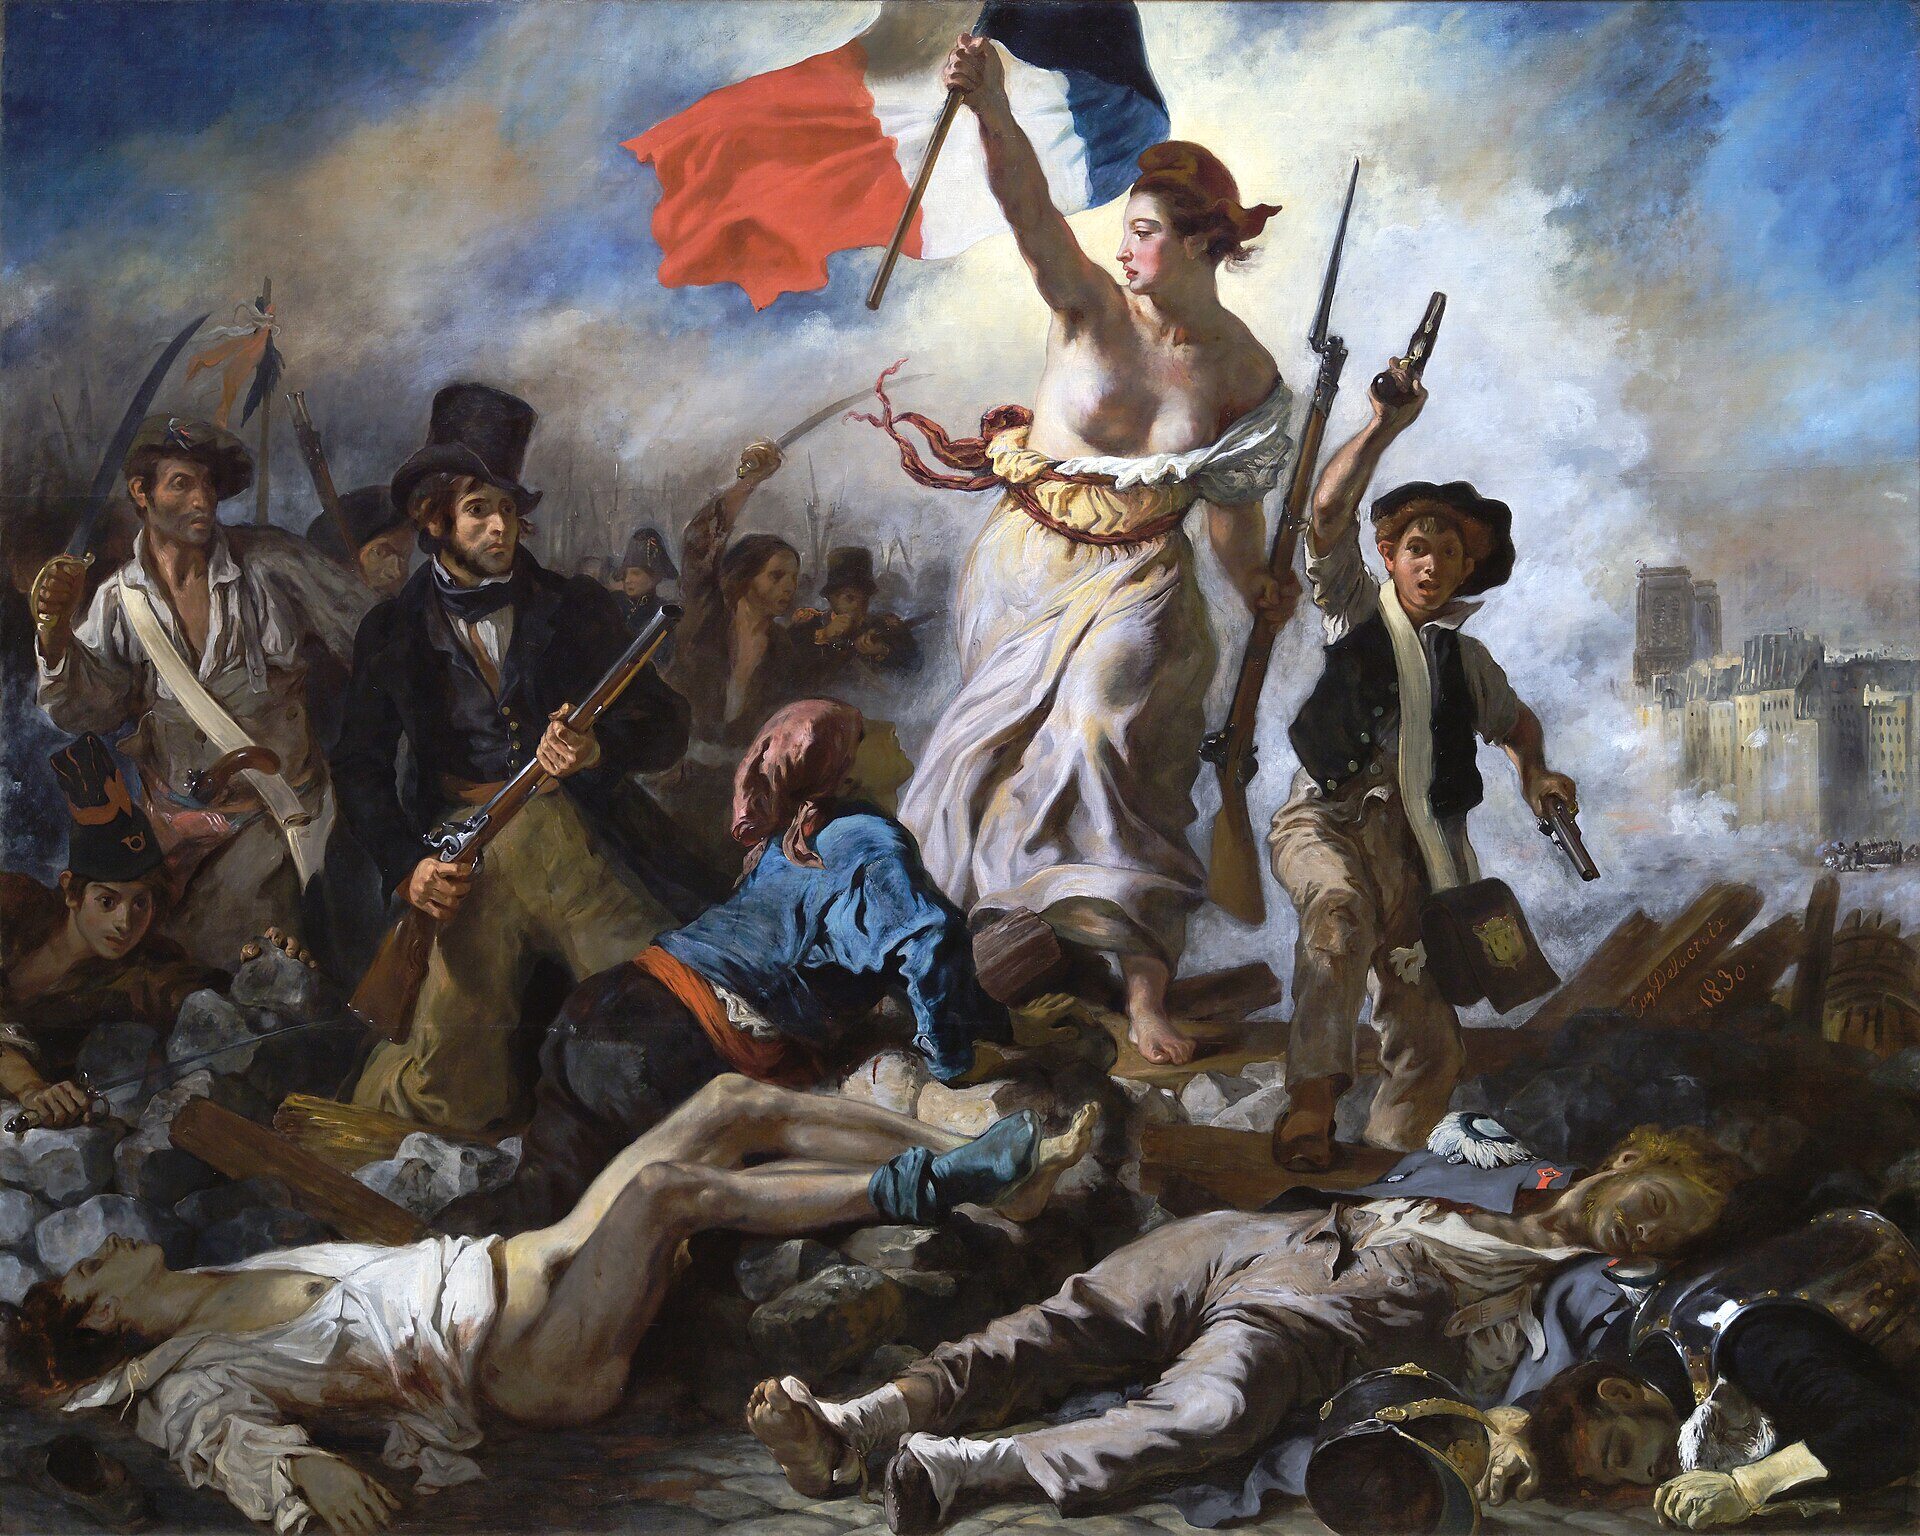 La Liberté guidant le peuple par Eugène Delacroix (1830)